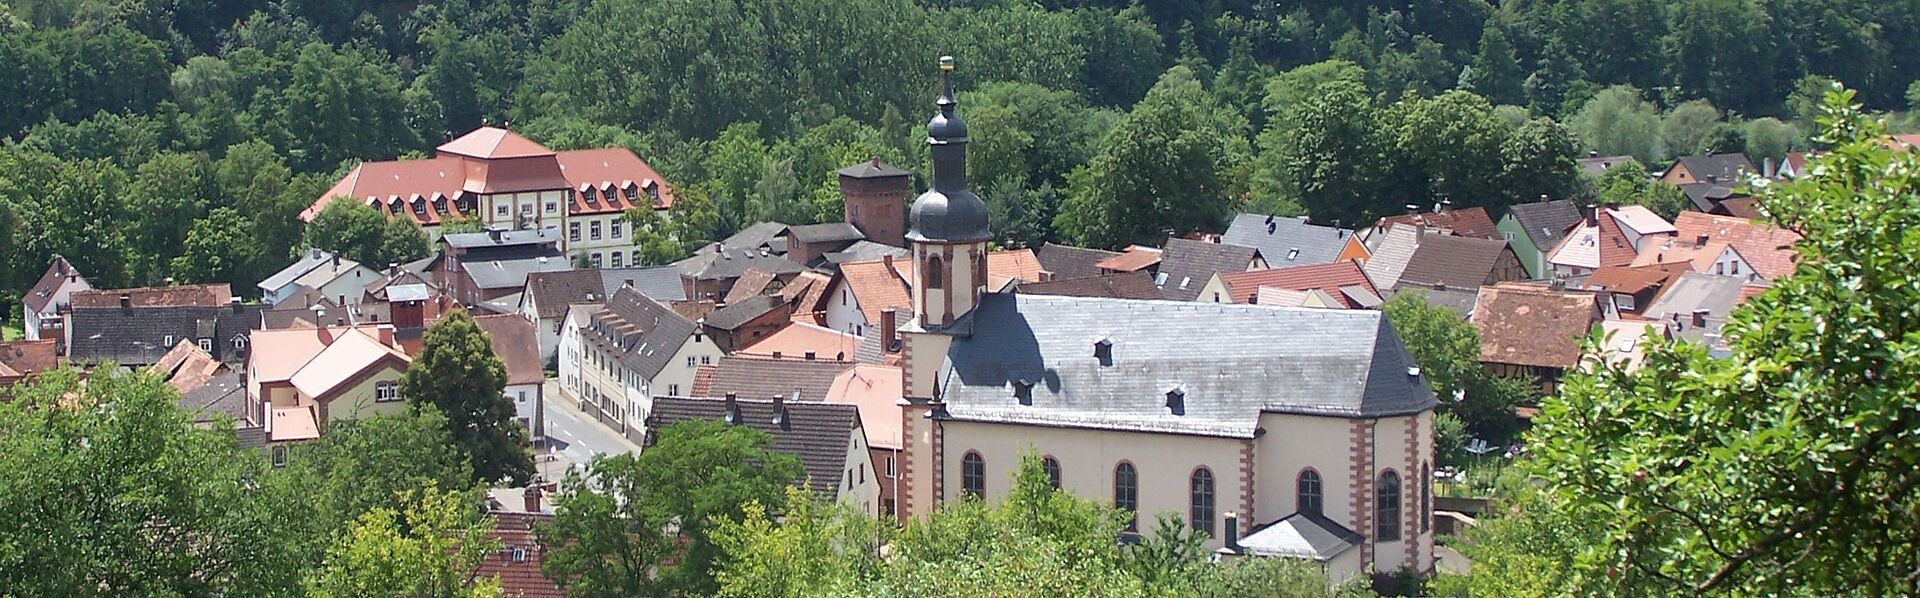 Blick auf das Maintal und Schloss Fechenbach